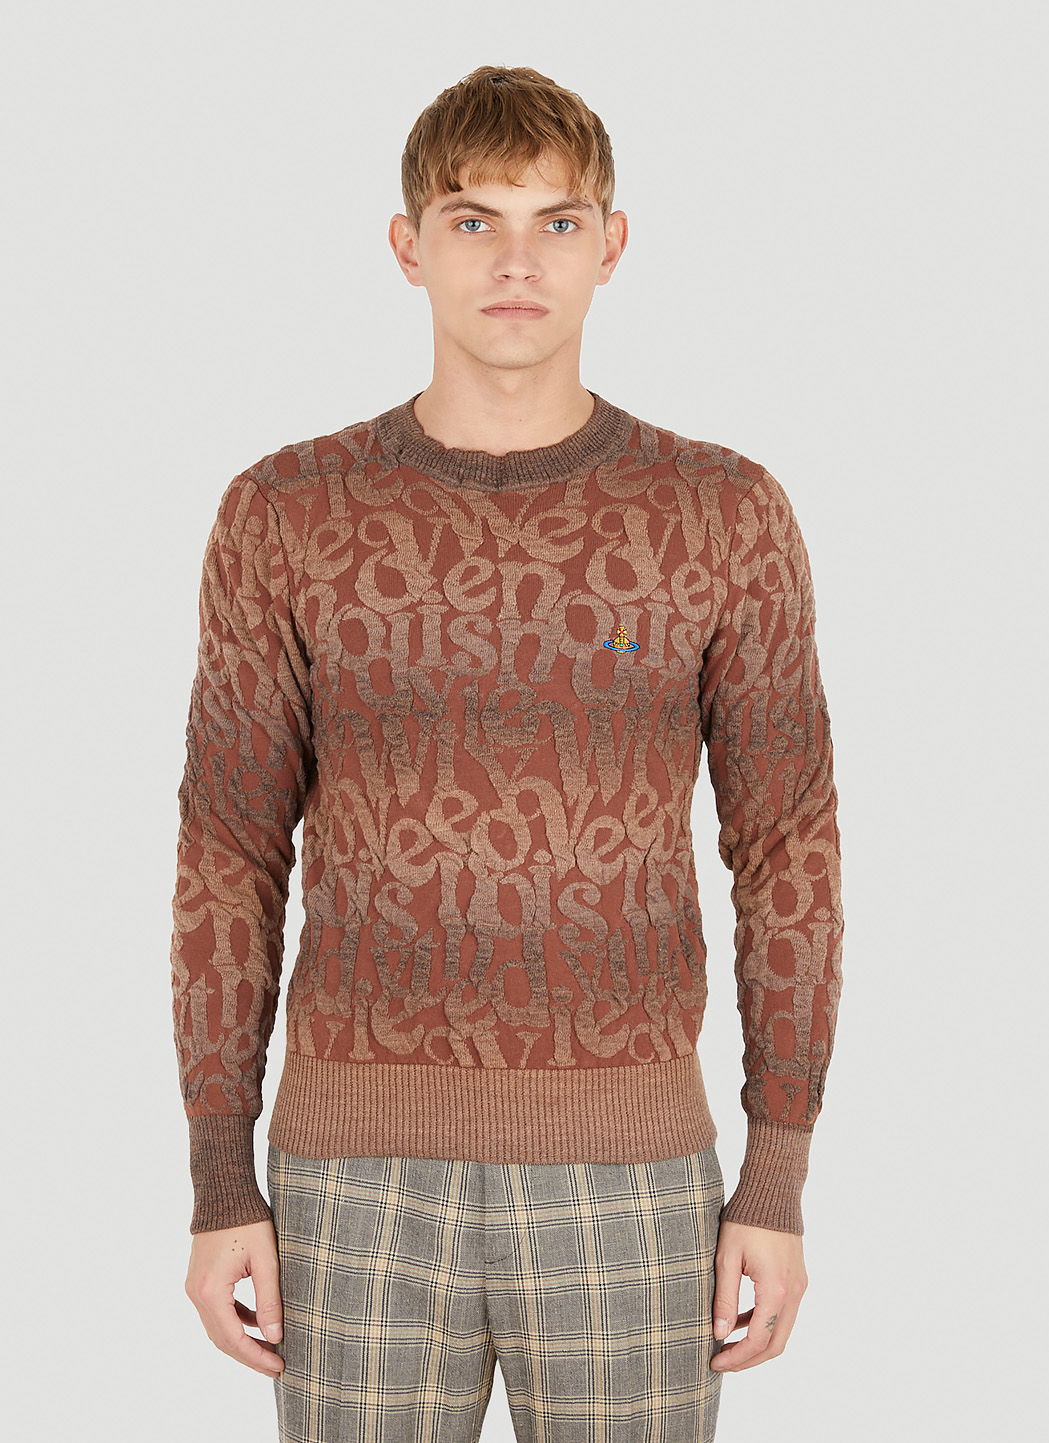 Lou & Grey Women's Jacquard Sweater